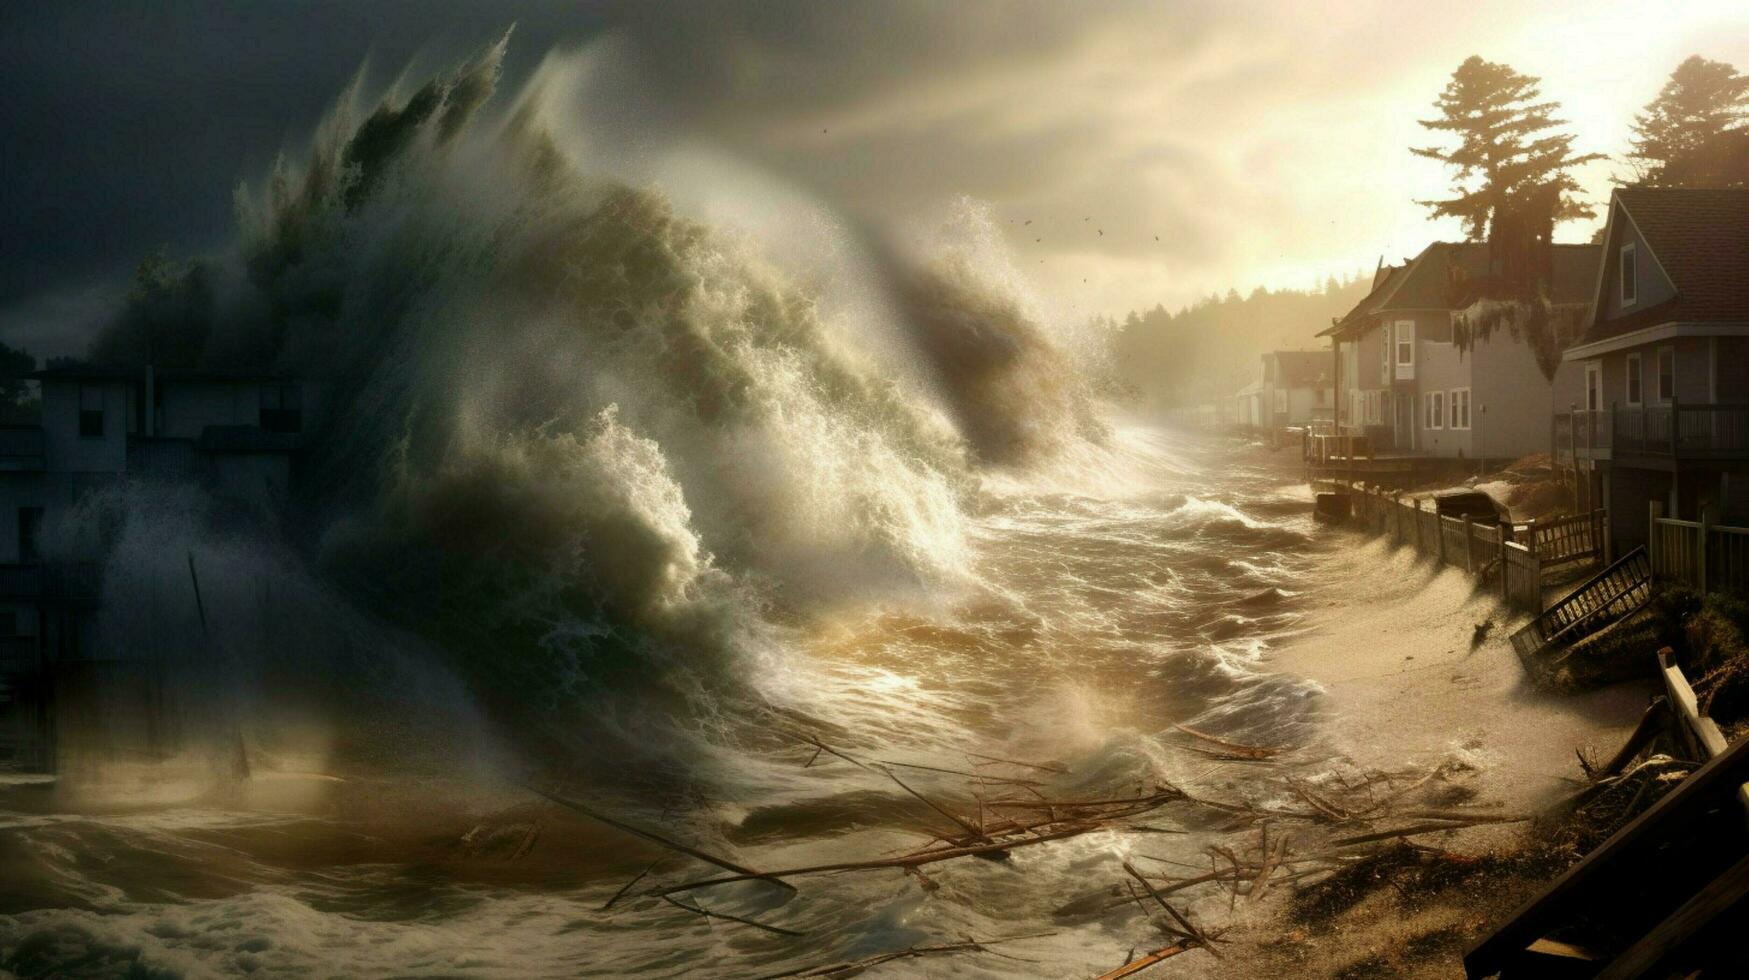 tsunami ondas batida para costa e violação costeiro foto